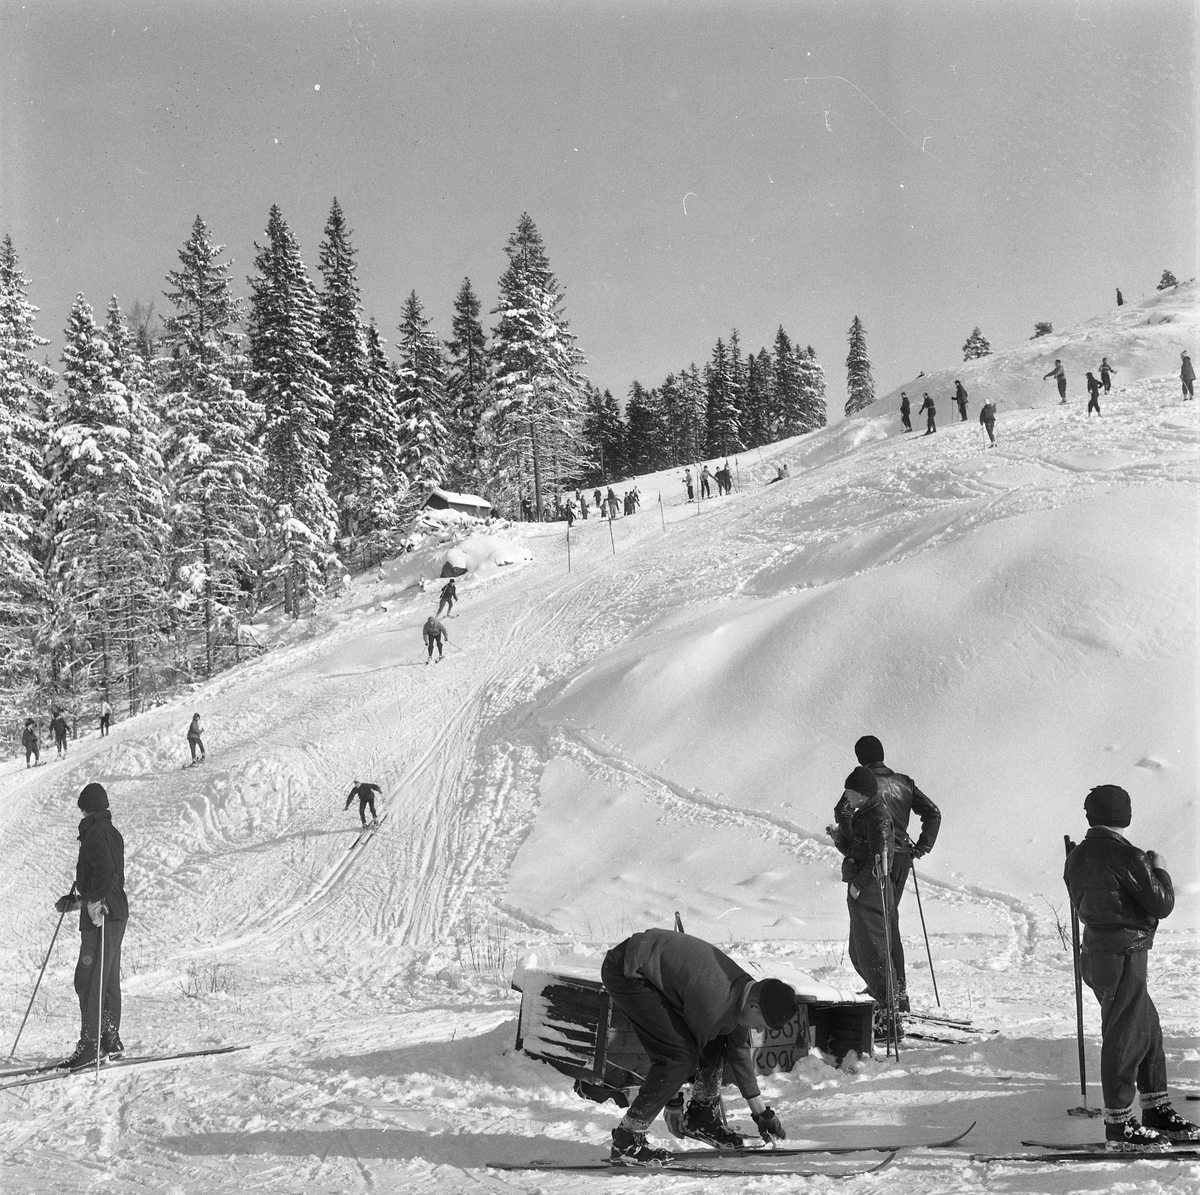 Skidlift i Ånnaboda.
19 Februari 1958.